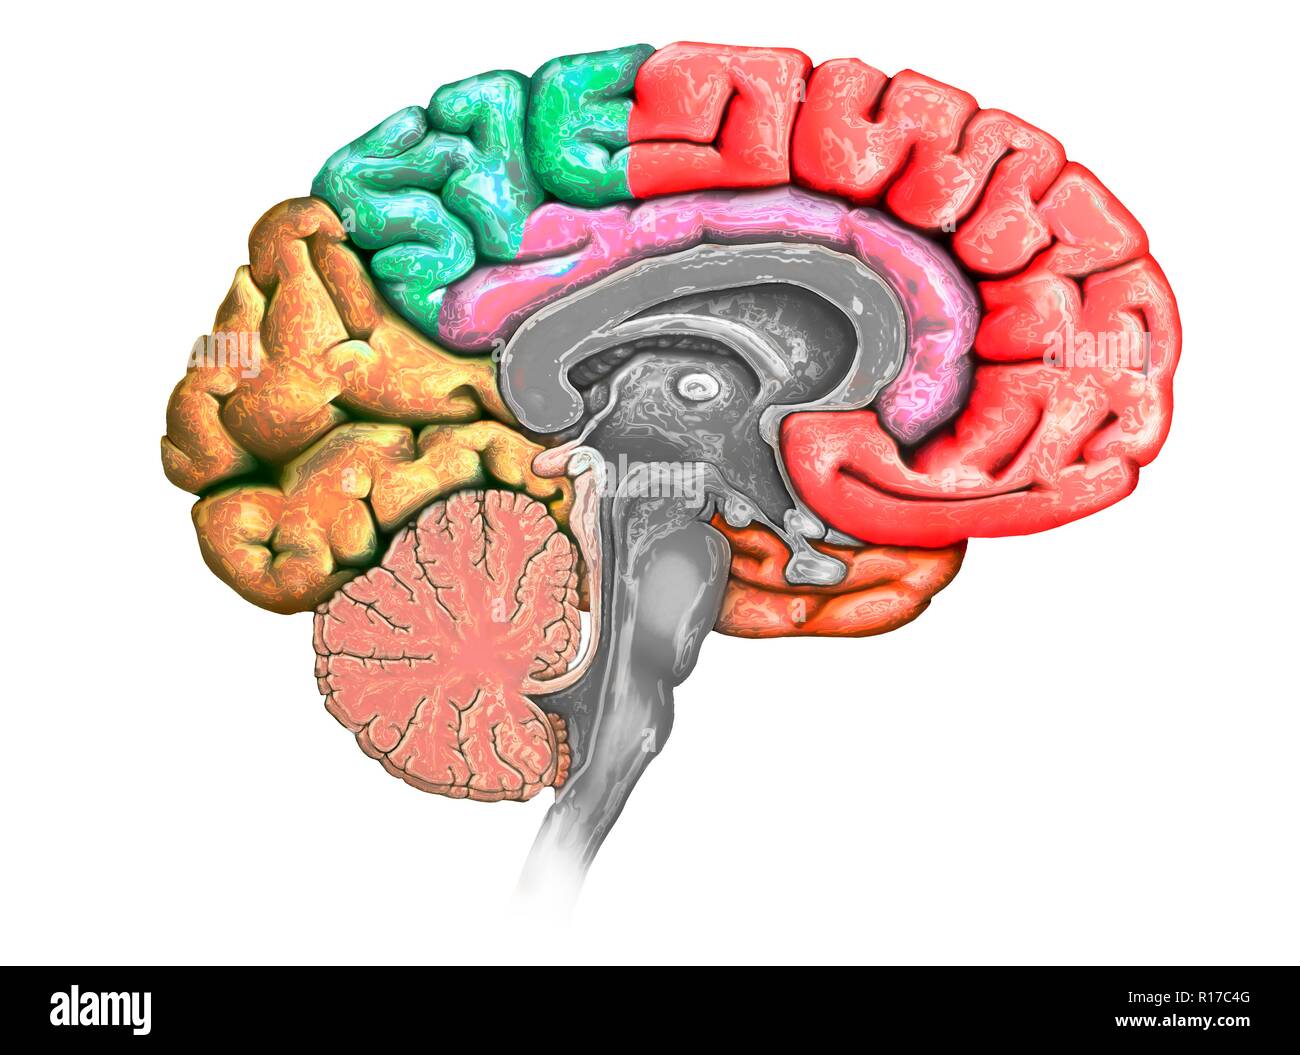 Abbildung: einen Querschnitt des Gehirns zeigt die verschiedenen Nocken. Die Nocken sind in verschiedenen Farben - rot (frontal), Grün (PARIETAL), Gelb (Okzipitalen), Orange (zeitliche) gezeigt, und Rosa (limbic). Ebenfalls dargestellt sind die verschiedenen Ventrikel, der Hirnstamm, thalamus und Hypothalamus, das Kleinhirn, die Hypophyse und den Corpus callosum. Stockfoto